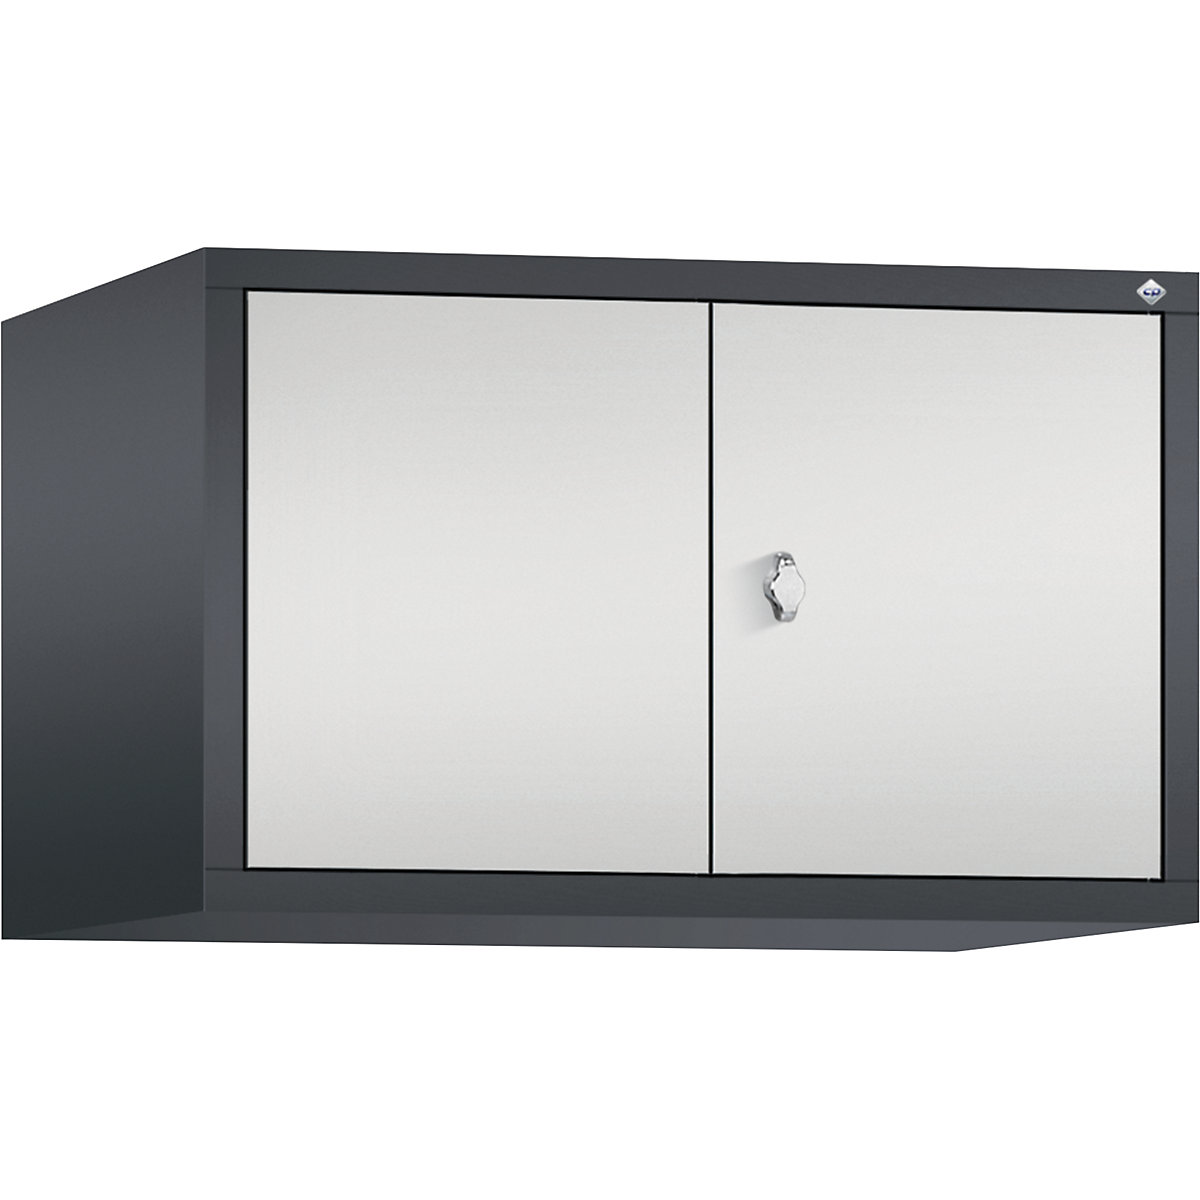 C+P – Altillo CLASSIC, puertas batientes que cierran al ras entre sí, 2 compartimentos, anchura de compartimento 400 mm, gris negruzco / gris luminoso